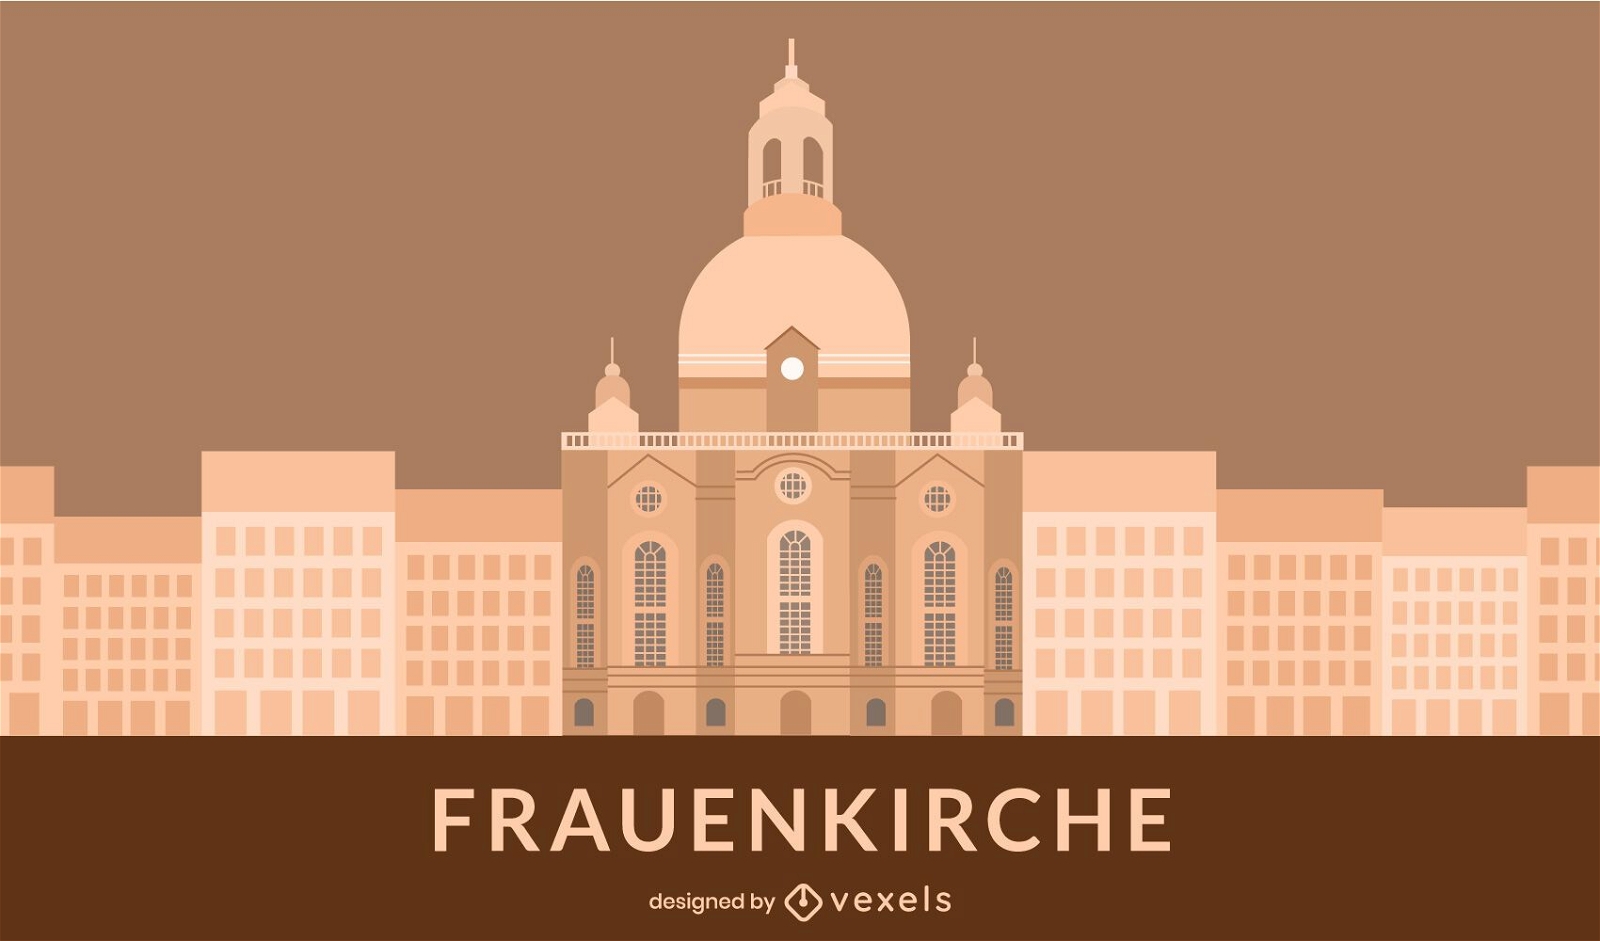 Edificio de la iglesia Frauenkirche de estilo plano